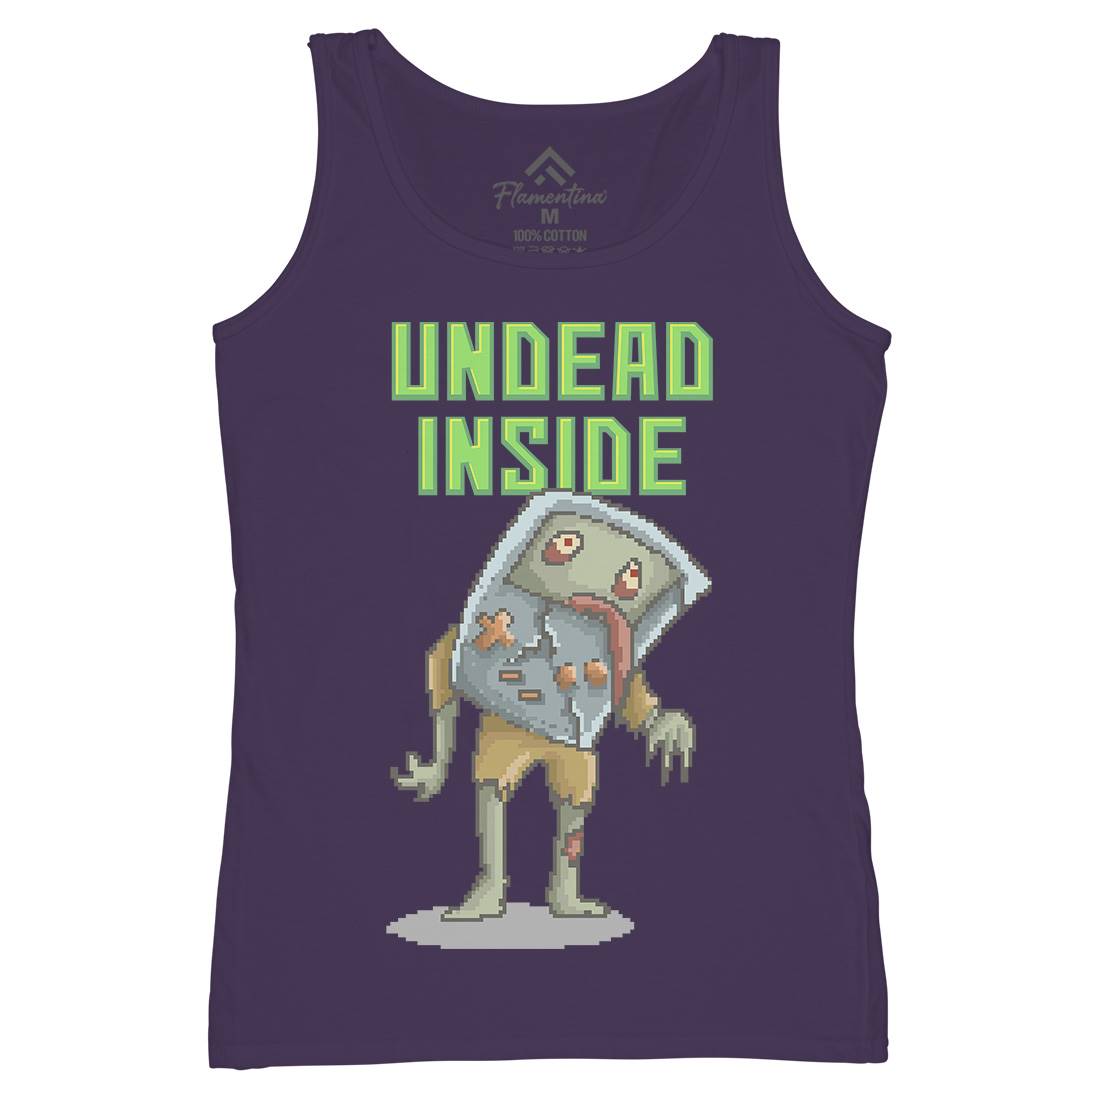 Undead Inside Womens Organic Tank Top Vest Geek B973